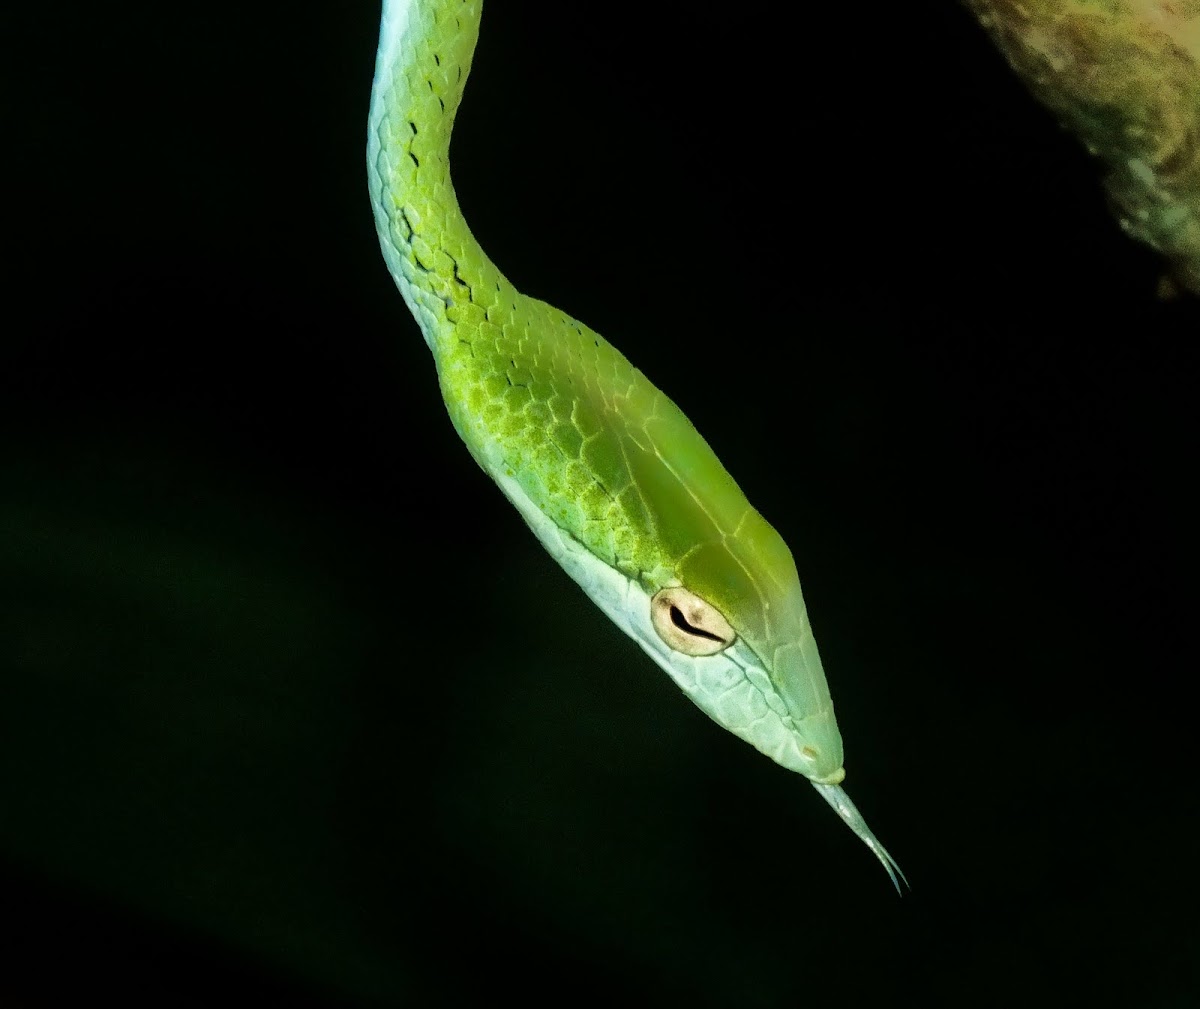 Oriental Whip Snake 